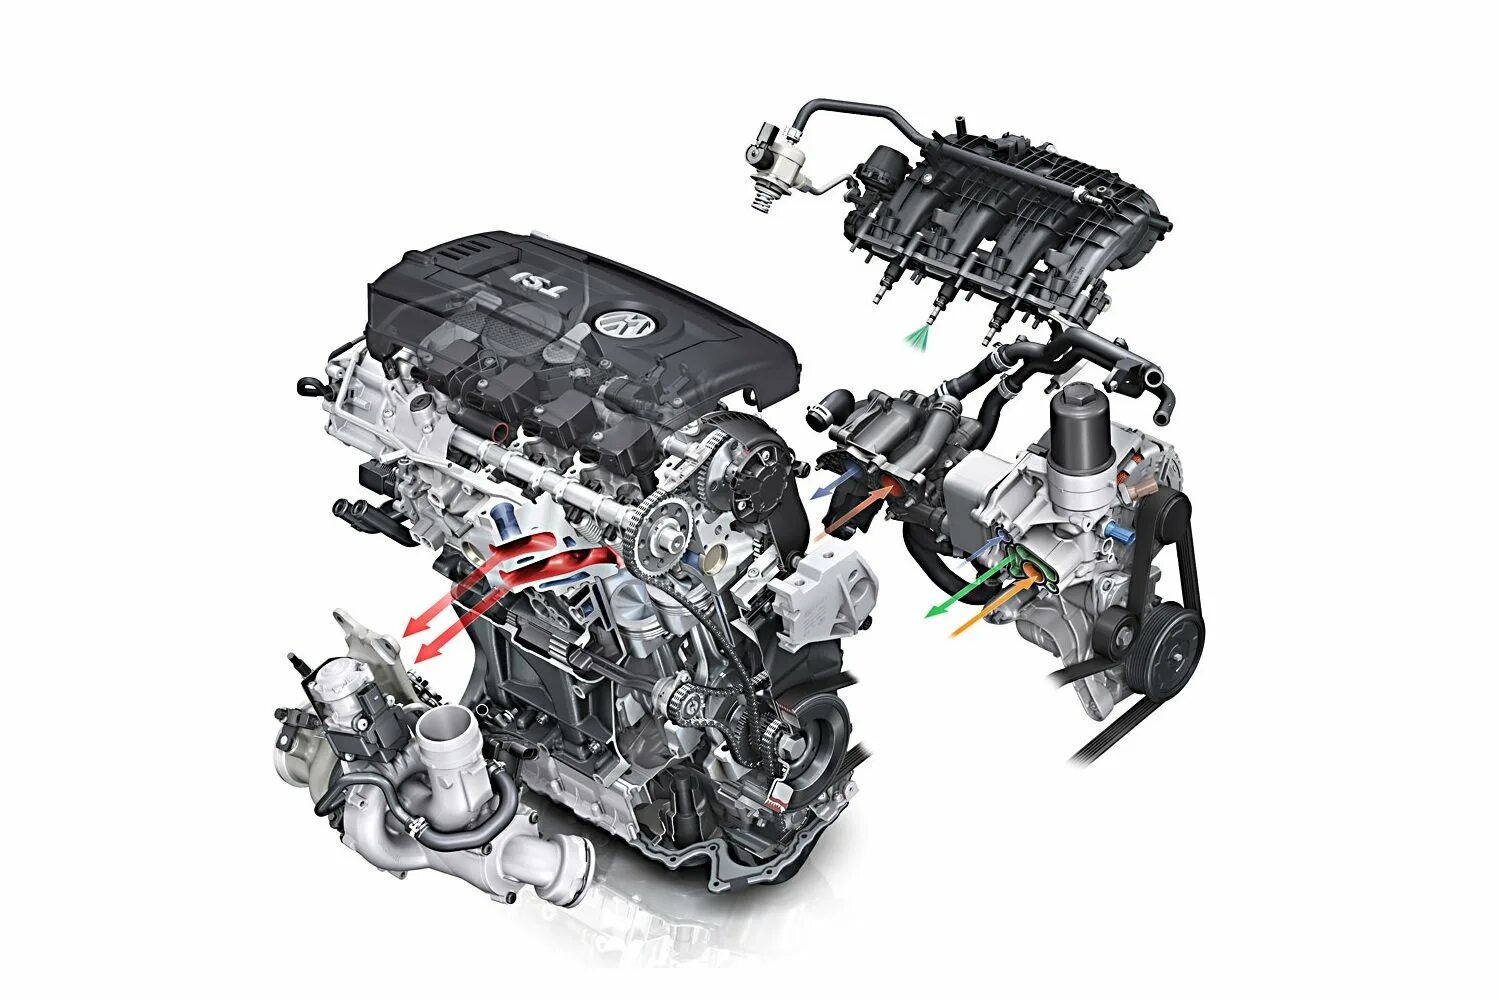 Двигатель Фольксваген ea888 Gen 2. Двигатель Volkswagen TSI 2.0. Мотор 1.8 TSI Gen 2. VAG двигатель 1.8 Gen 2.